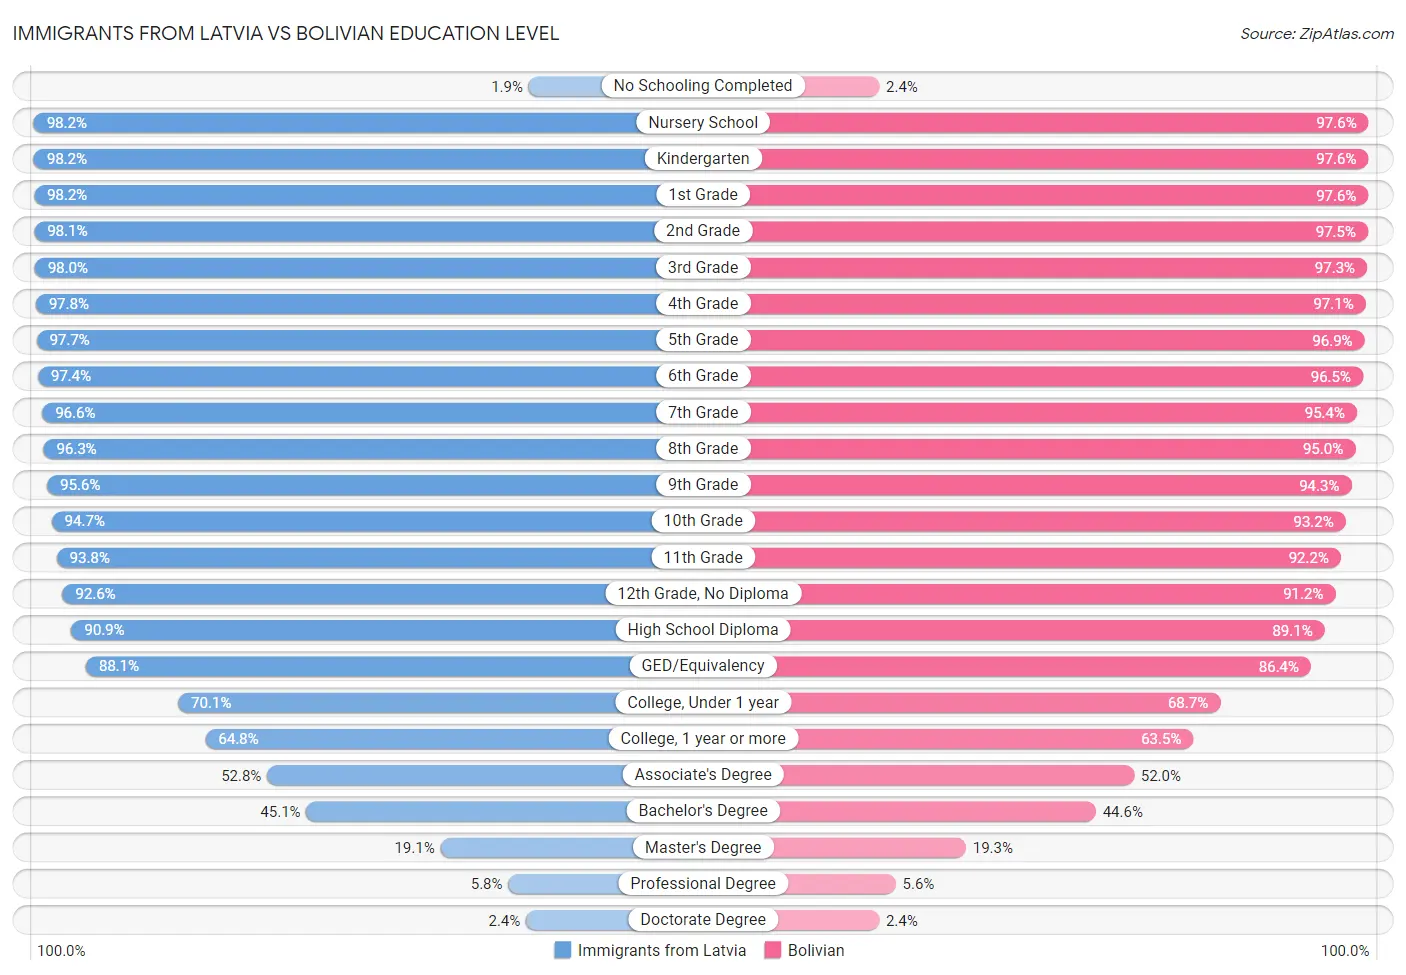 Immigrants from Latvia vs Bolivian Education Level